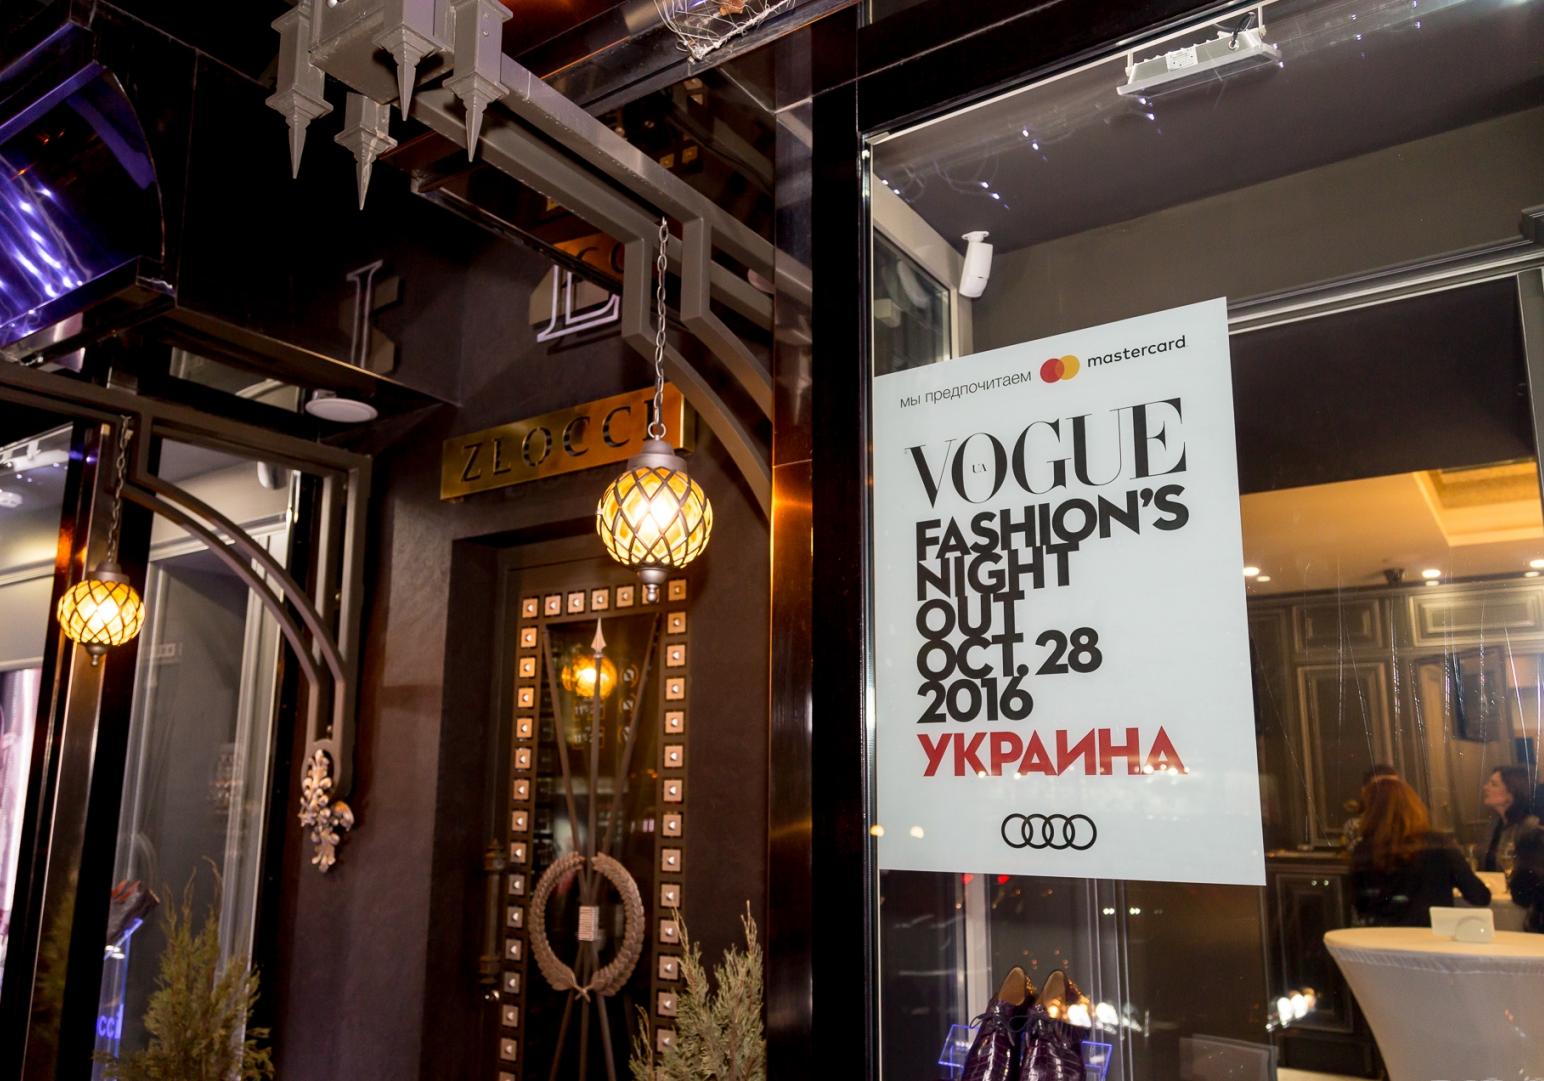 Новость - События - Zlocci принял участие в Vogue Fashion’s Night Out